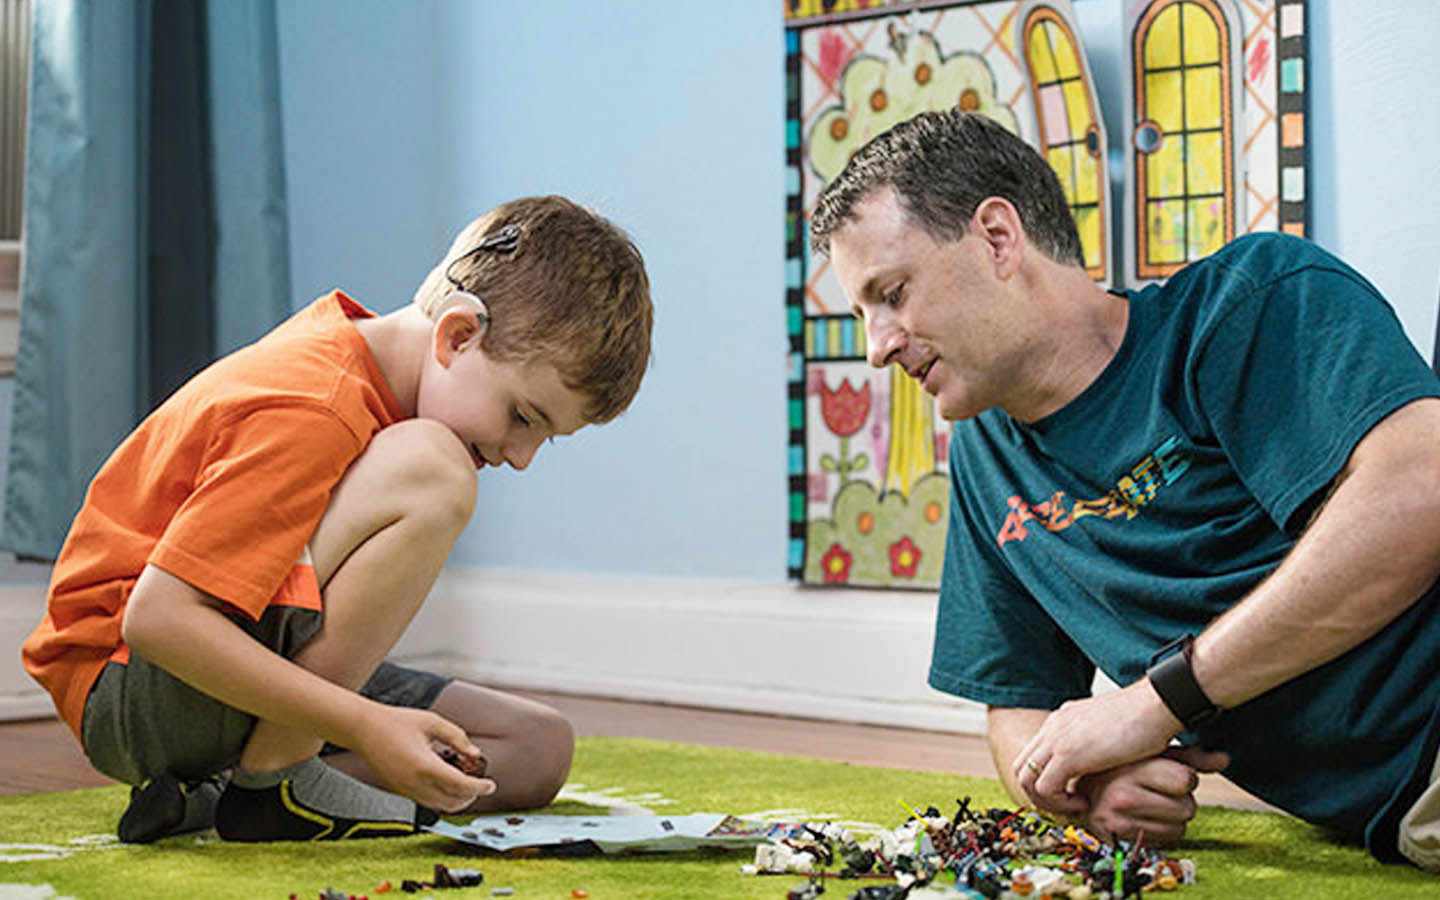 Un niño con un implante coclear juega en el piso y su padre lo observa